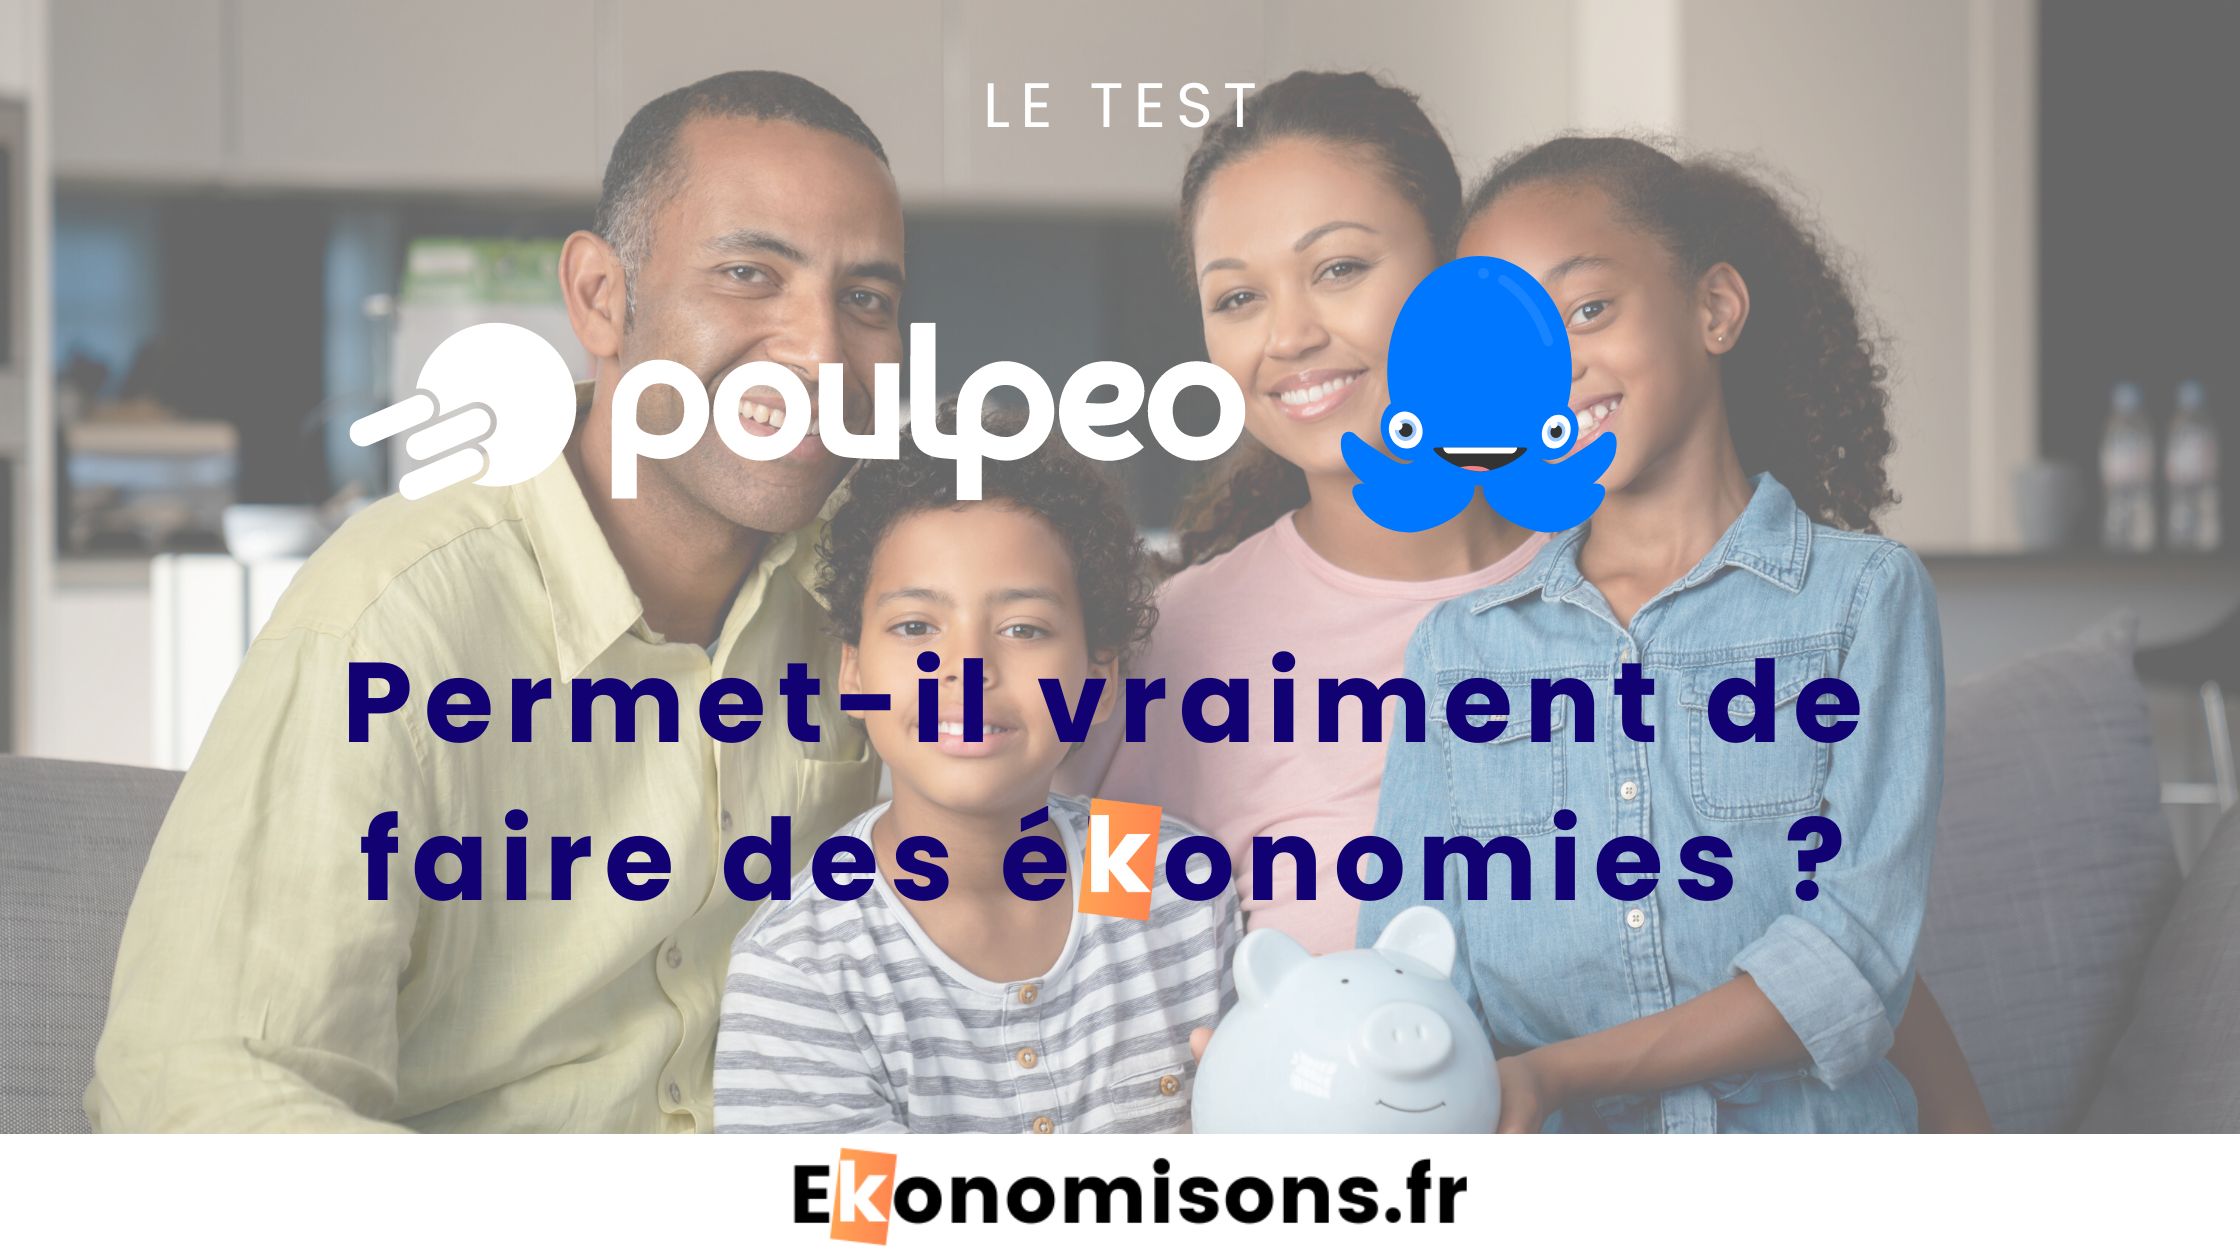 Photo du logo de Poulpeo, accompagné du texte : "Le test Poulpeo : Permet-il vraiment de faire des économies ? Ekonomisons.fr"